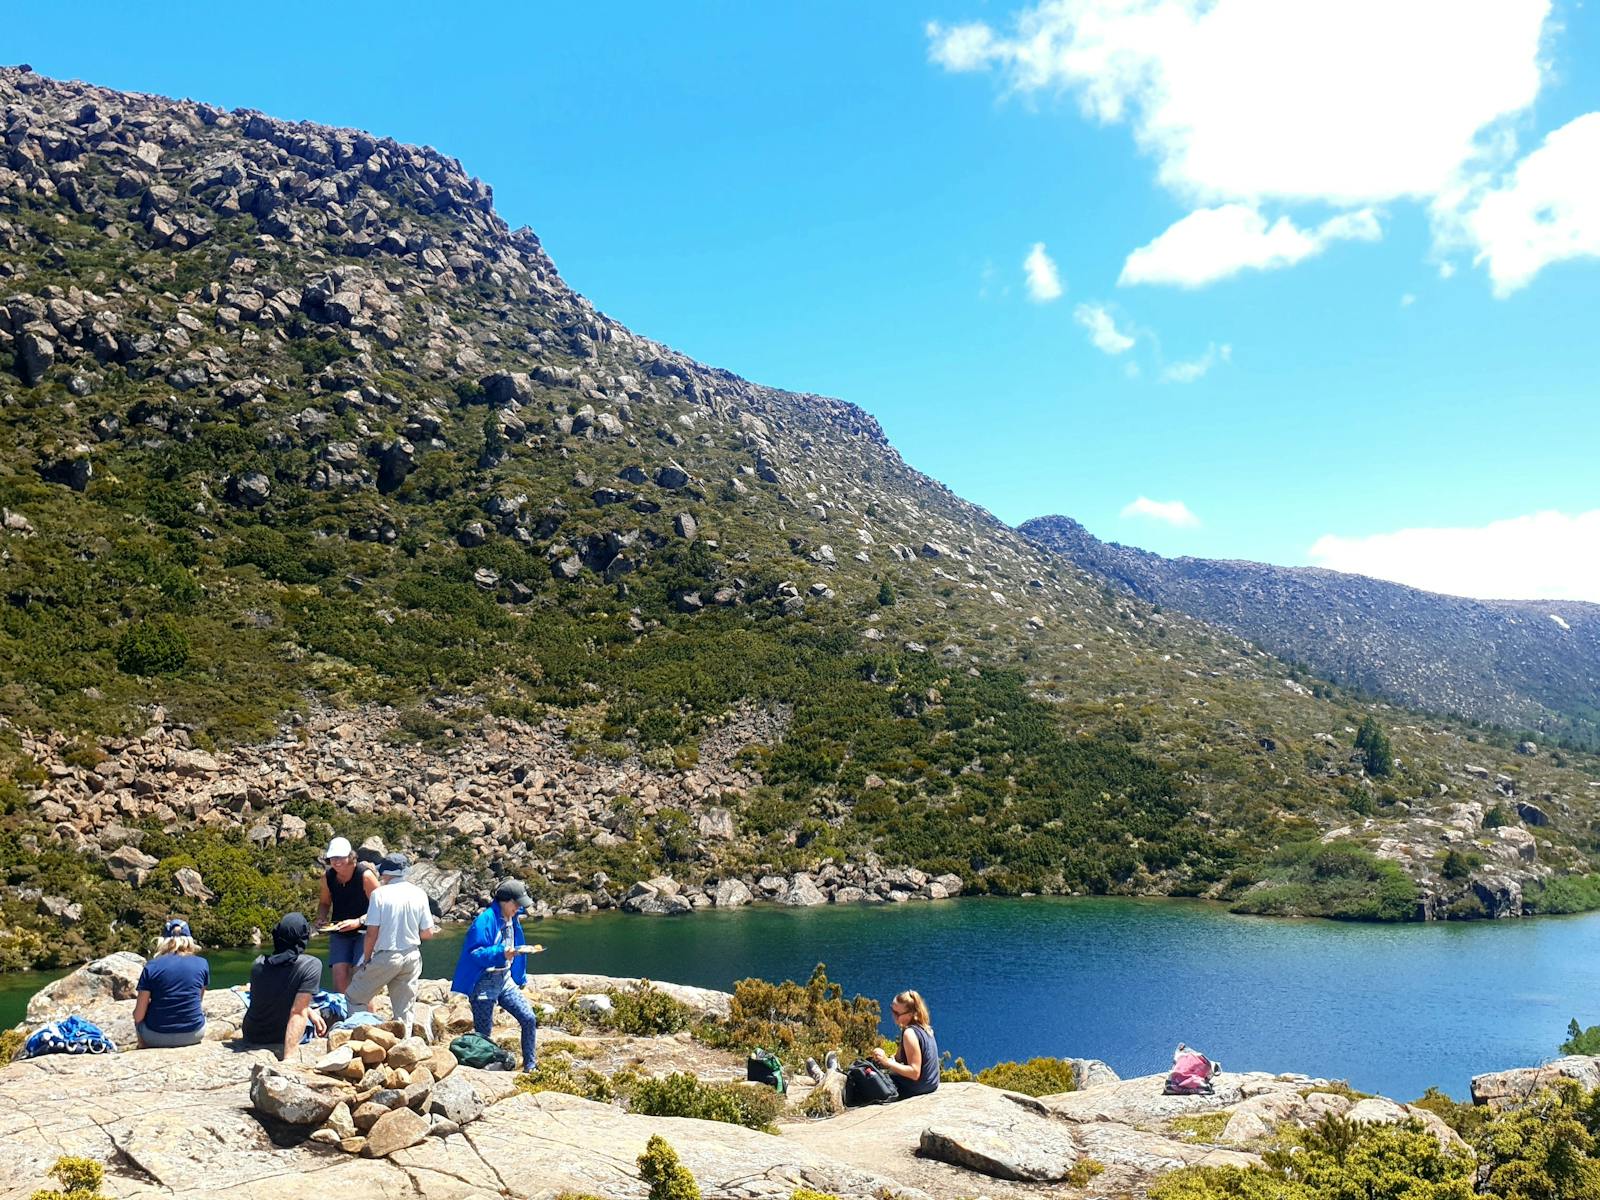 Mount Field Walks, Mt Field Walks, Mount Field Hikes, Mt Field Hikes, See Tasmania Tours, Hobart